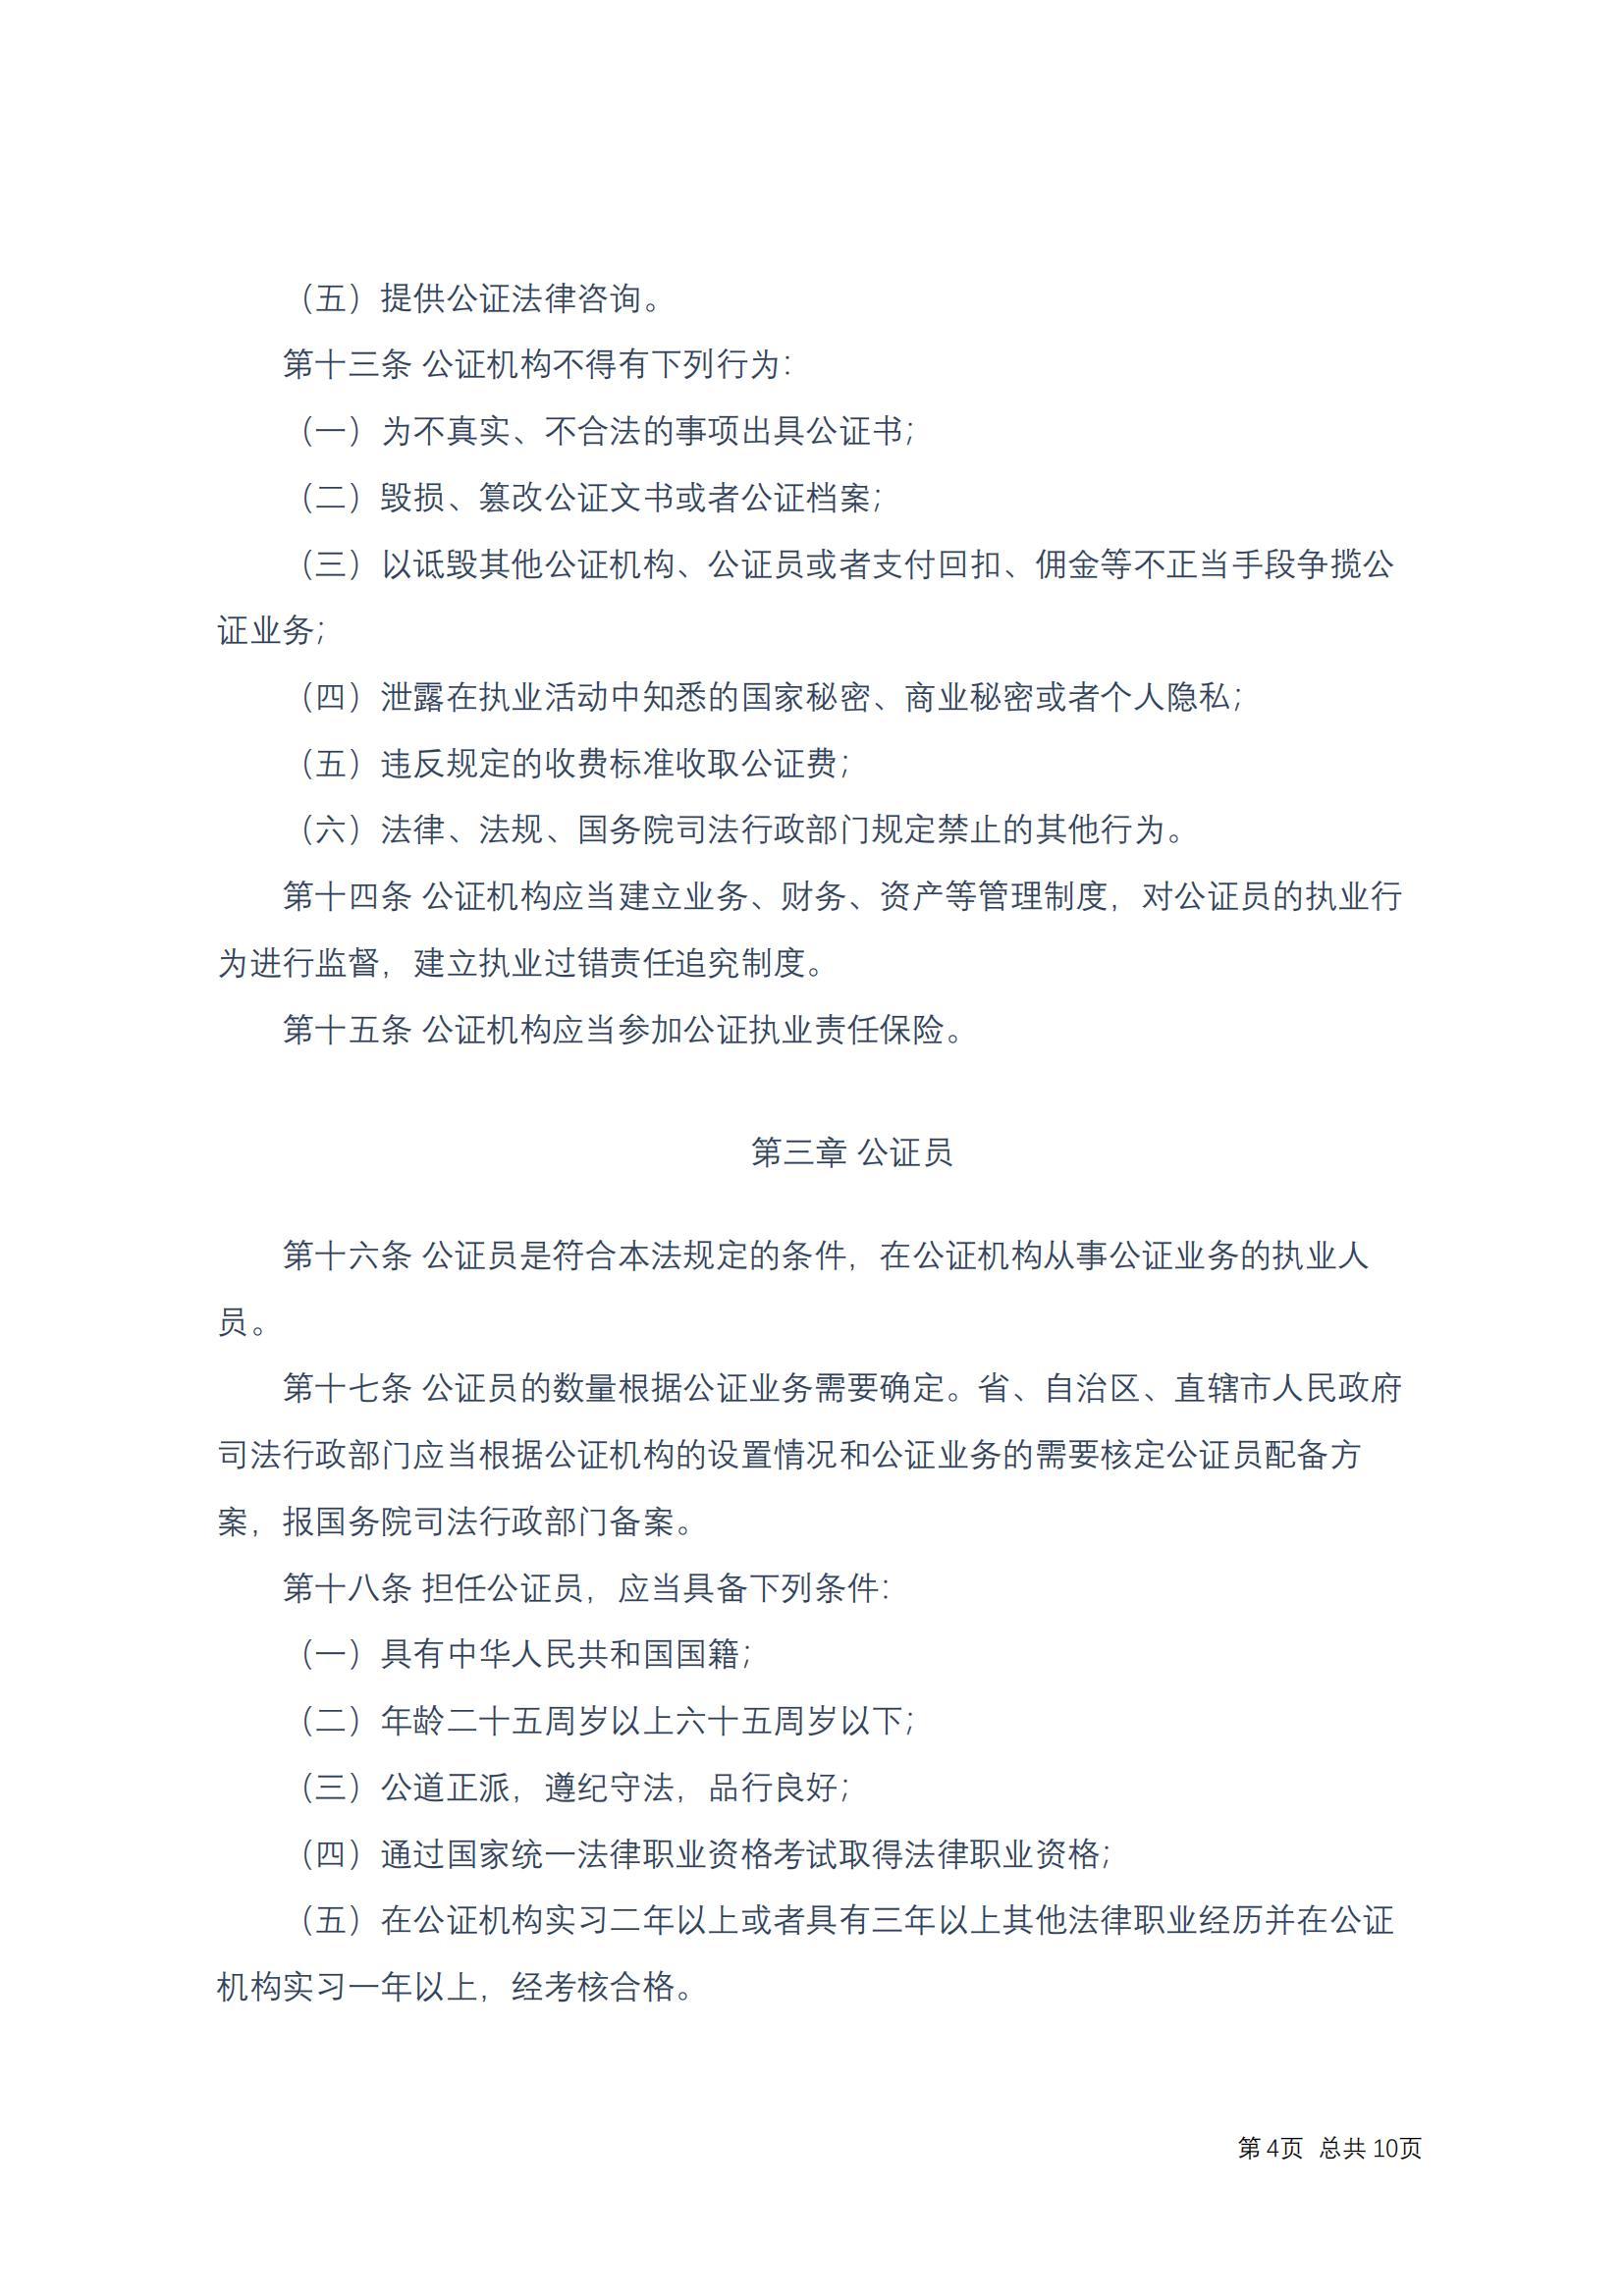 中华人民共和国公证法(2017修正)修改过_03